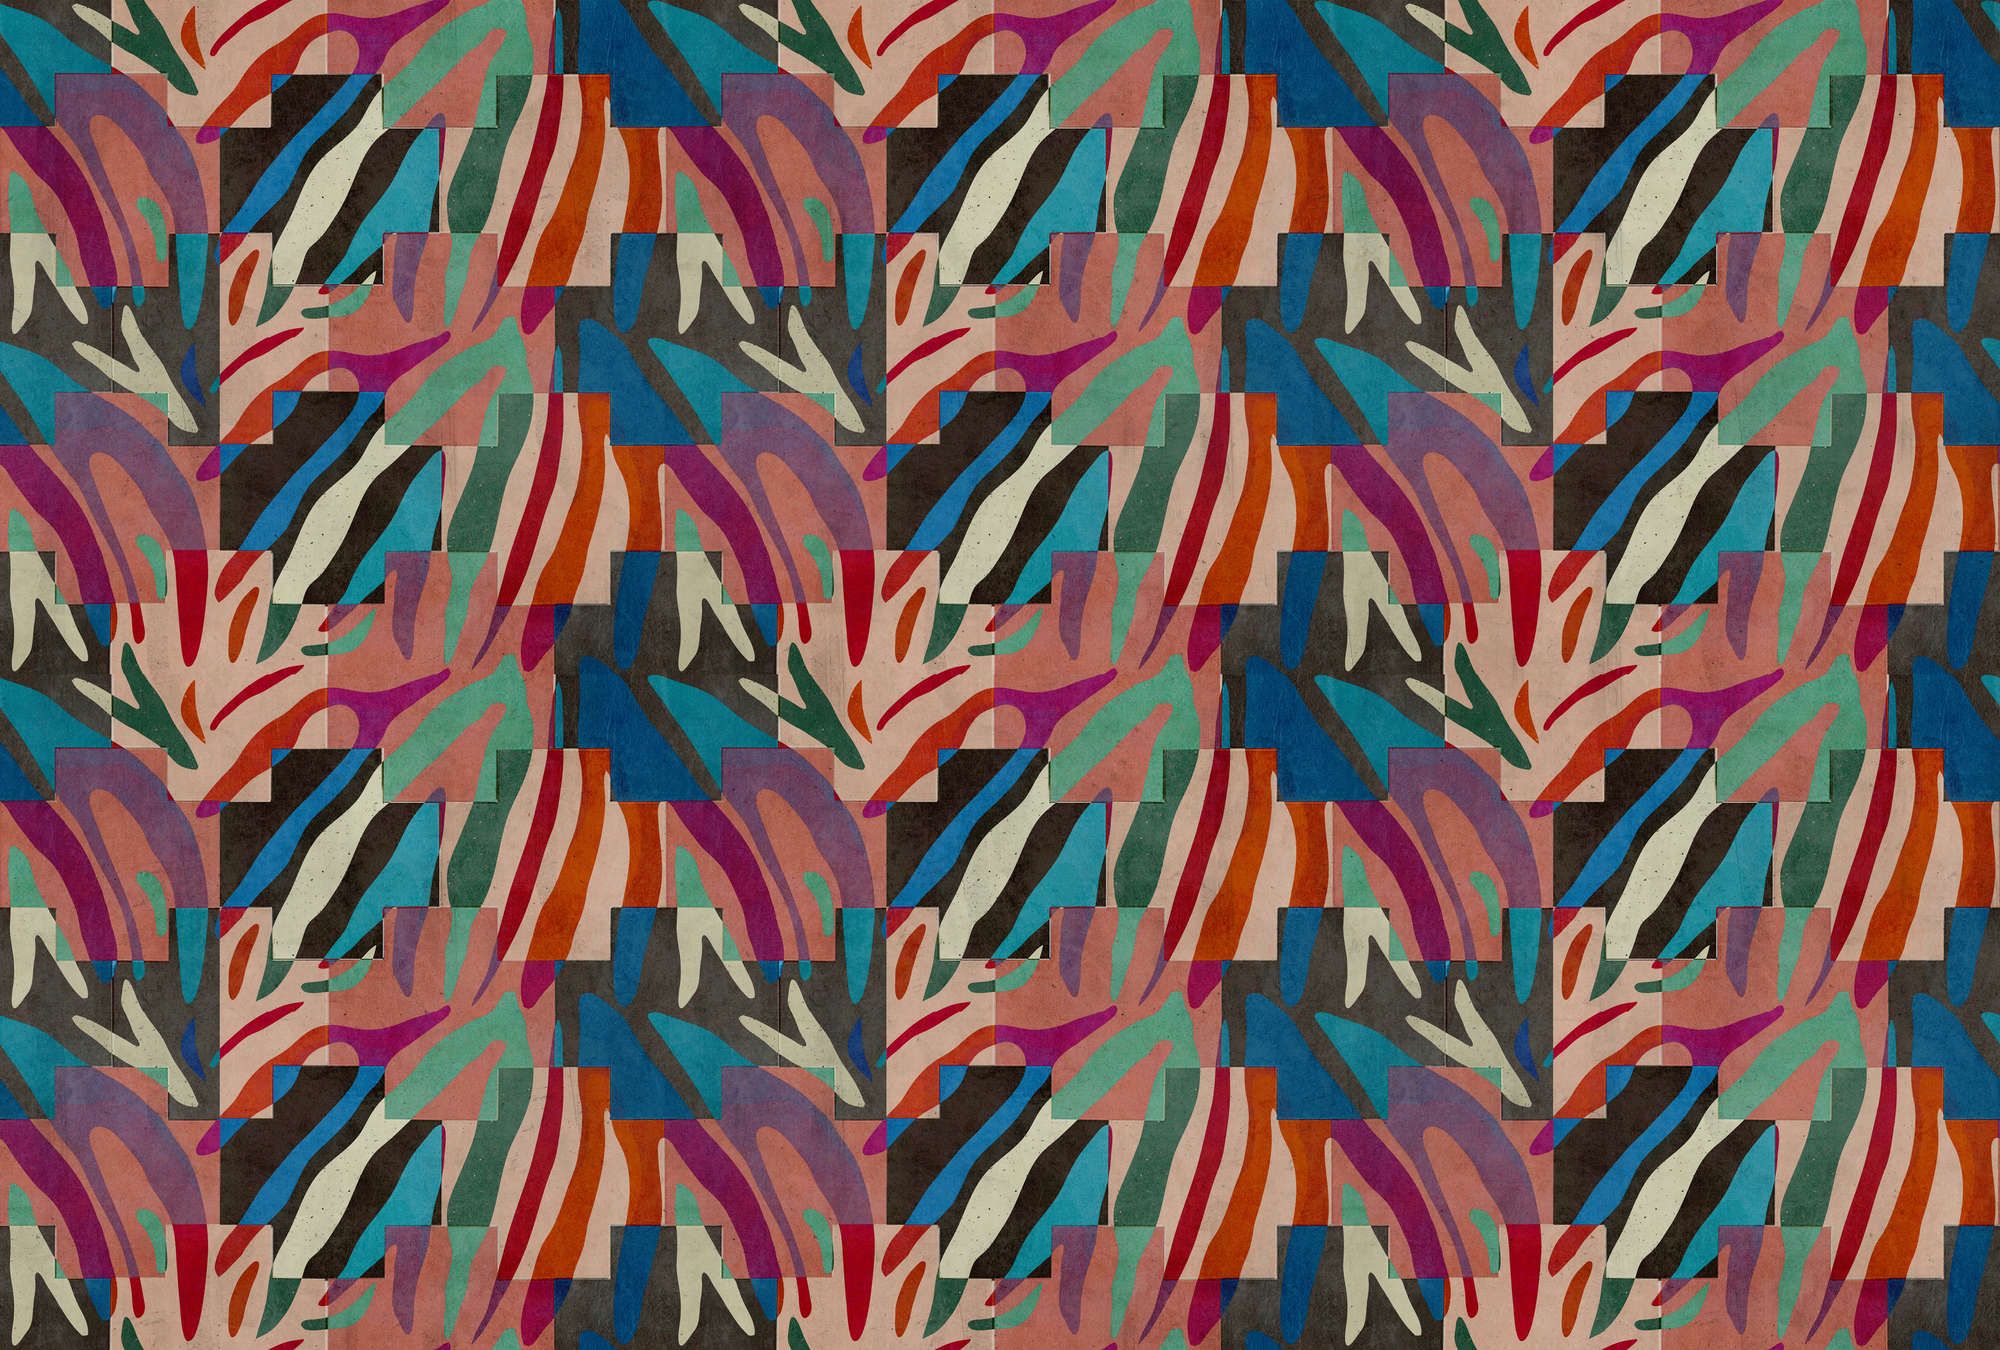             Fotomural »ettore« - Diseño abstracto colorido delante de una textura de yeso de hormigón - Material no tejido liso, ligeramente nacarado
        